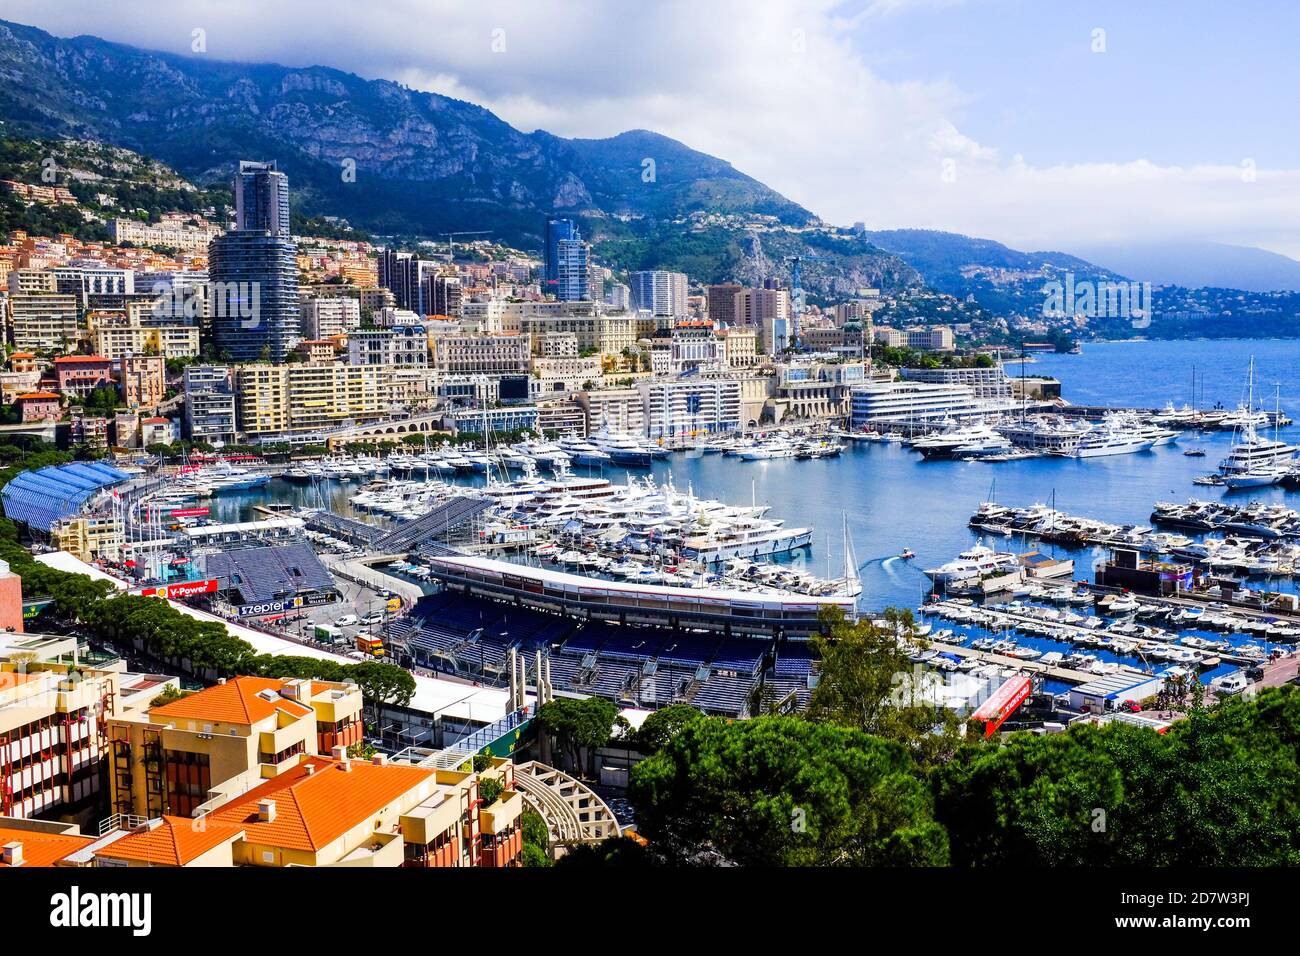 Port Hercule and a portion of La Condamine, the central ward of Monaco. Stock Photo